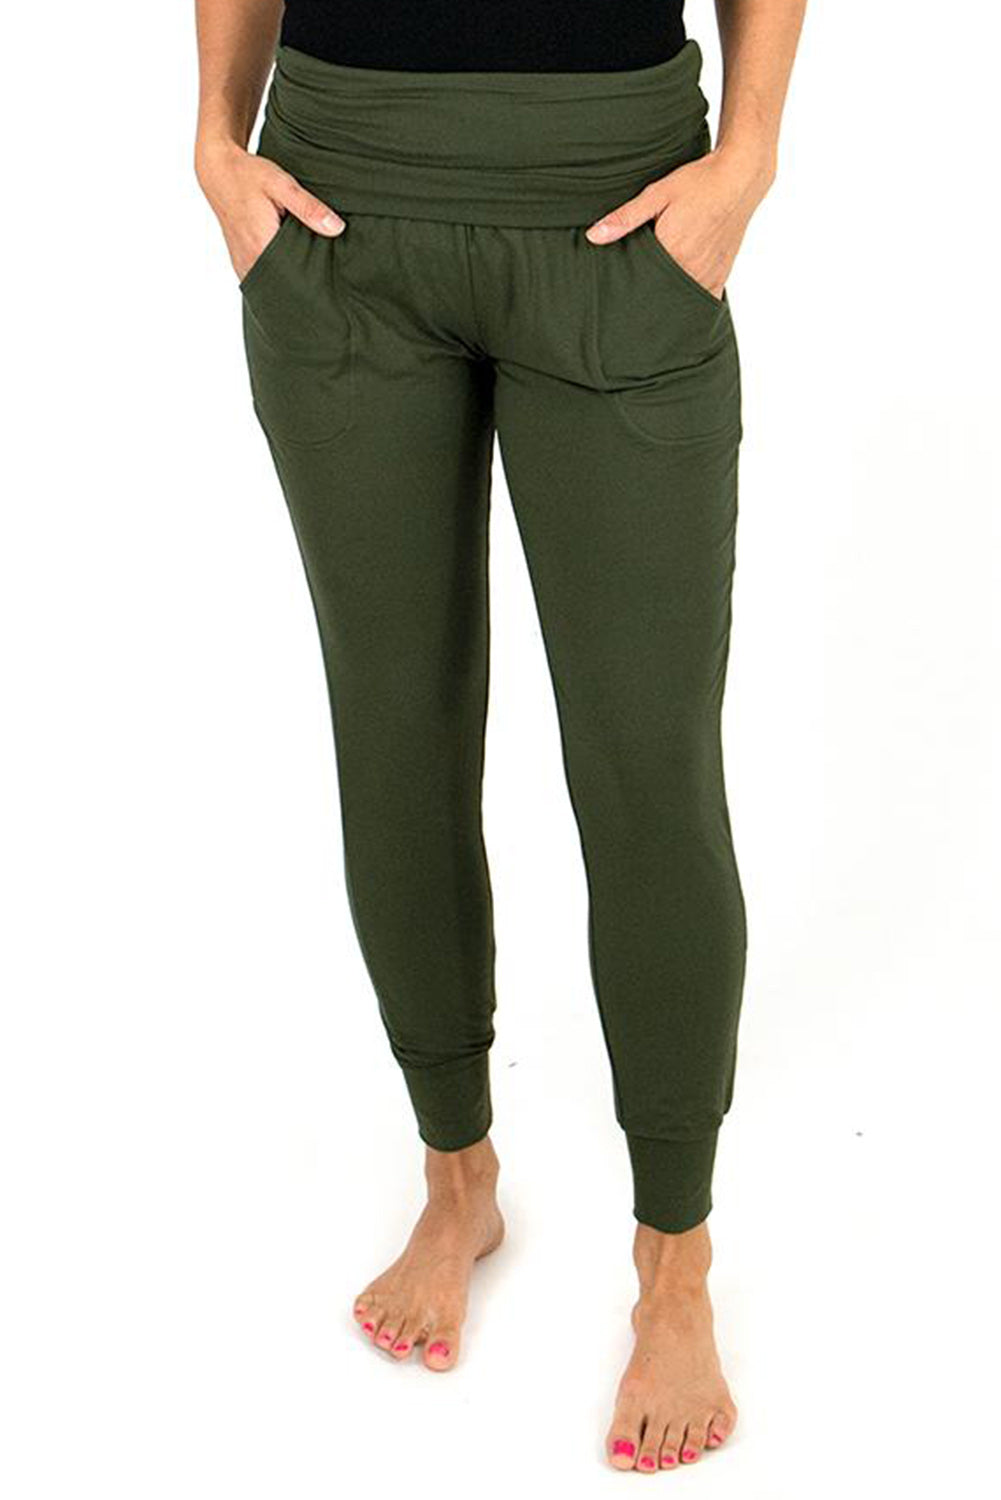 Grüne Leggings mit hoher Taille und plissierten Taschen